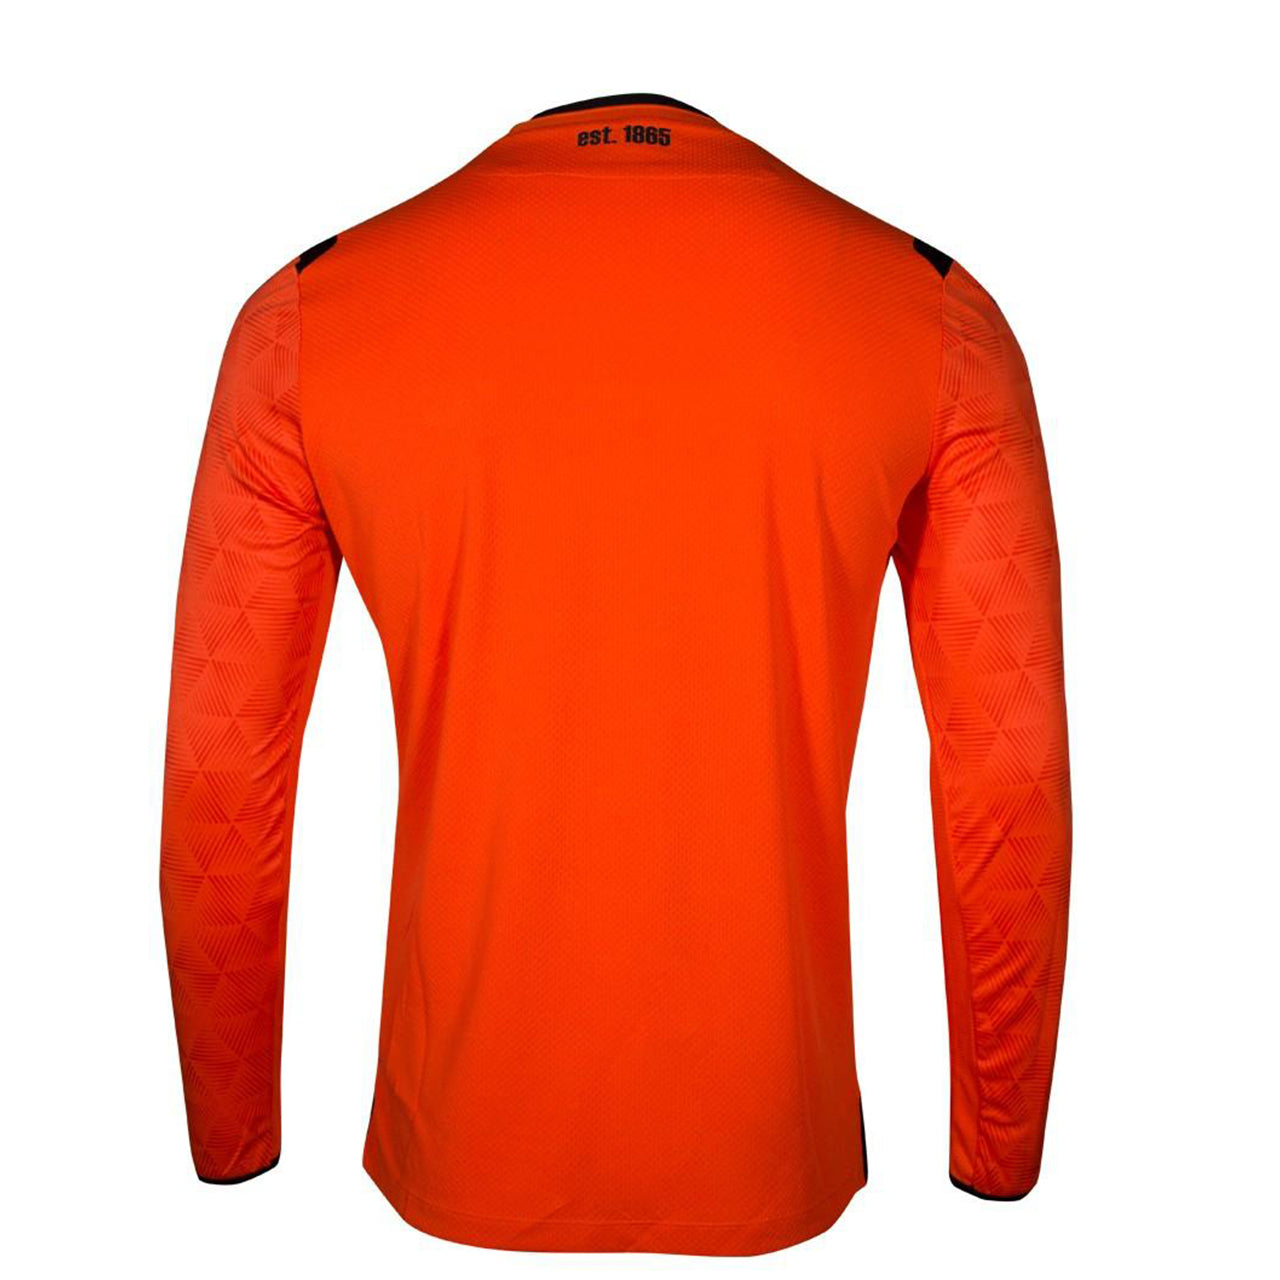 Nottingham Forest Goalkeeper Kit | Nottingham Forest Shop